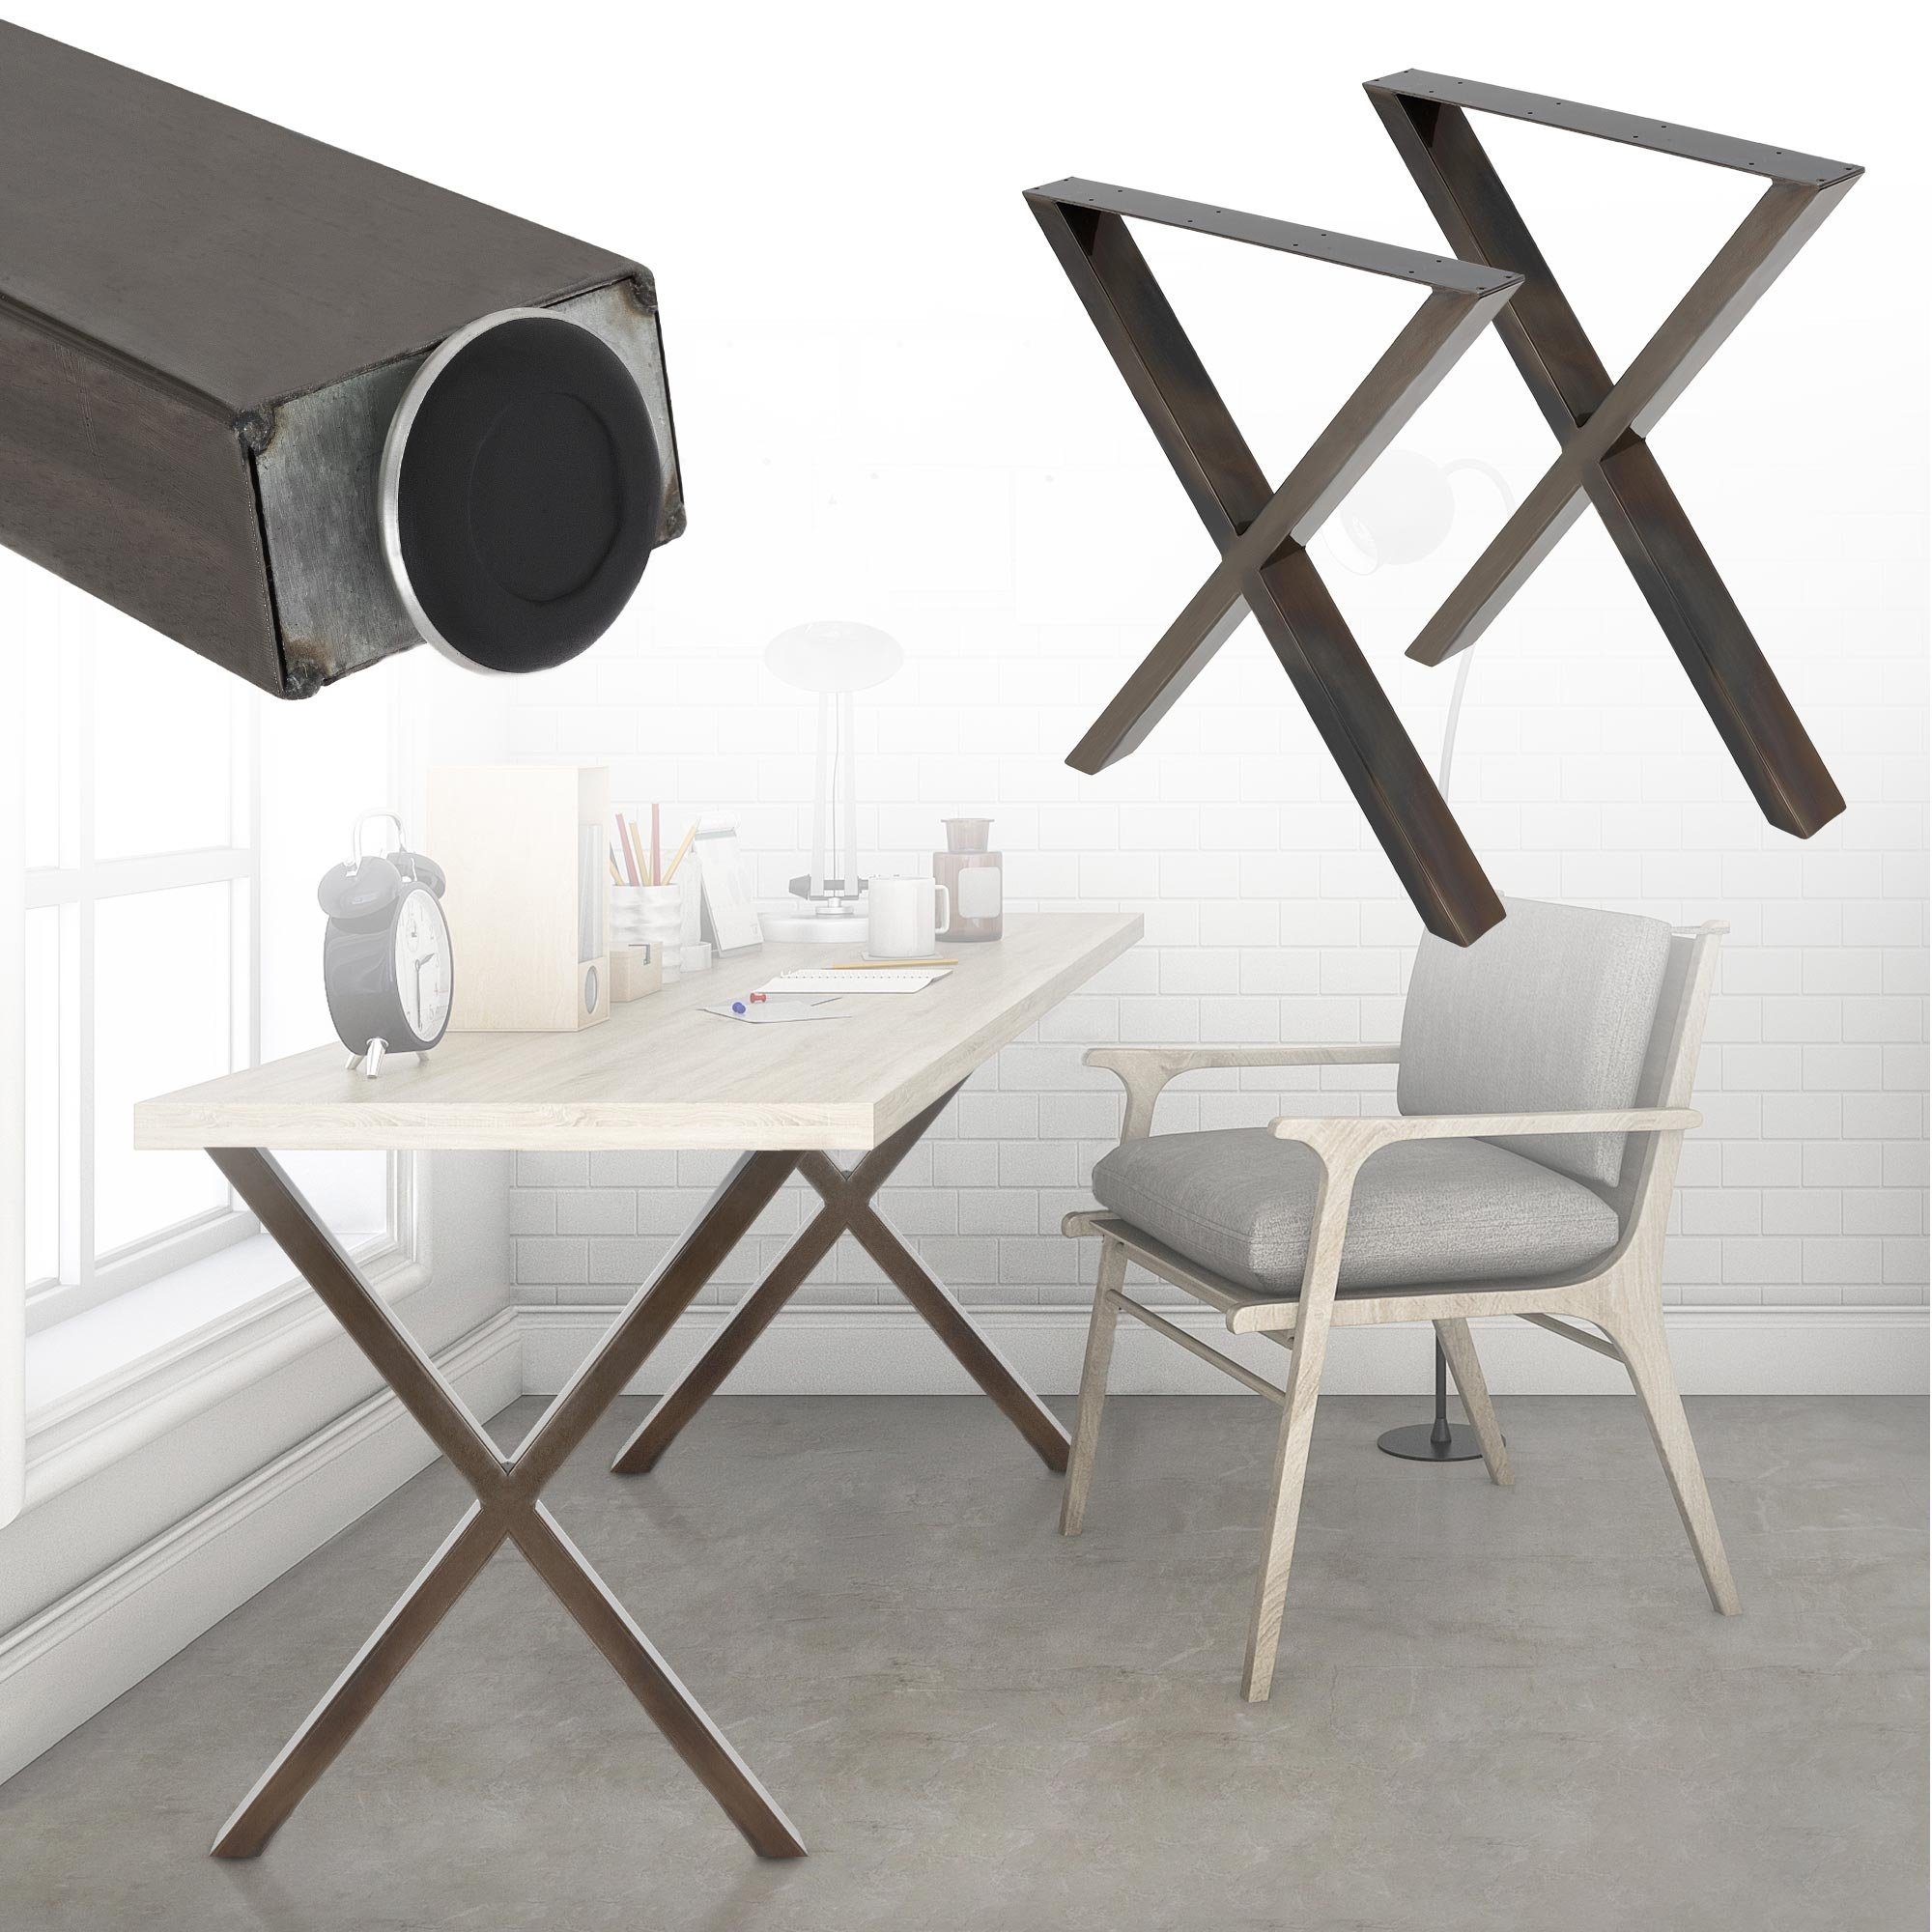 X-Form Tischbein Tischuntergestell Tischgestell 60x73cm 2er X-Design Möbelfüße, Tischkufen ECD Metall Stahl Set Industriedesign Germany